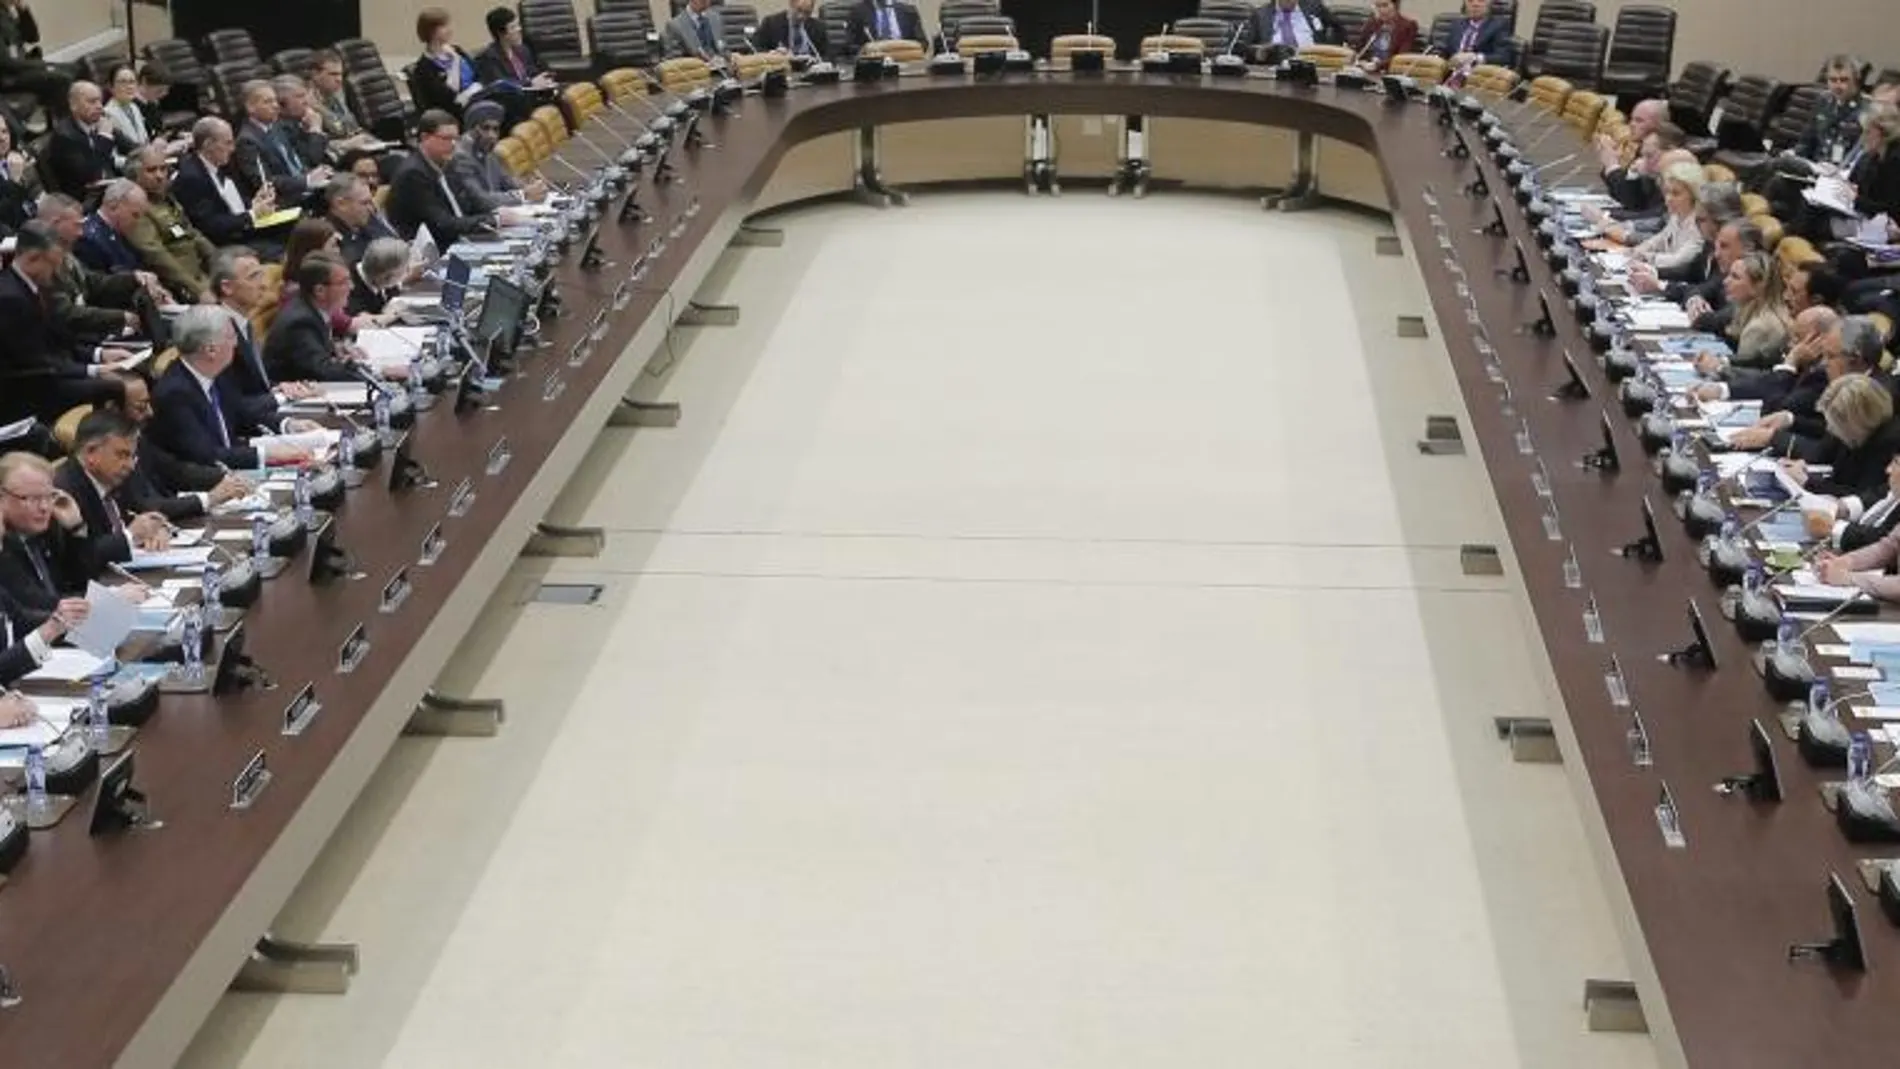 Vista general de la reunión de la coalición liderada por Estados Unidos en la lucha contra el Estado Islámic